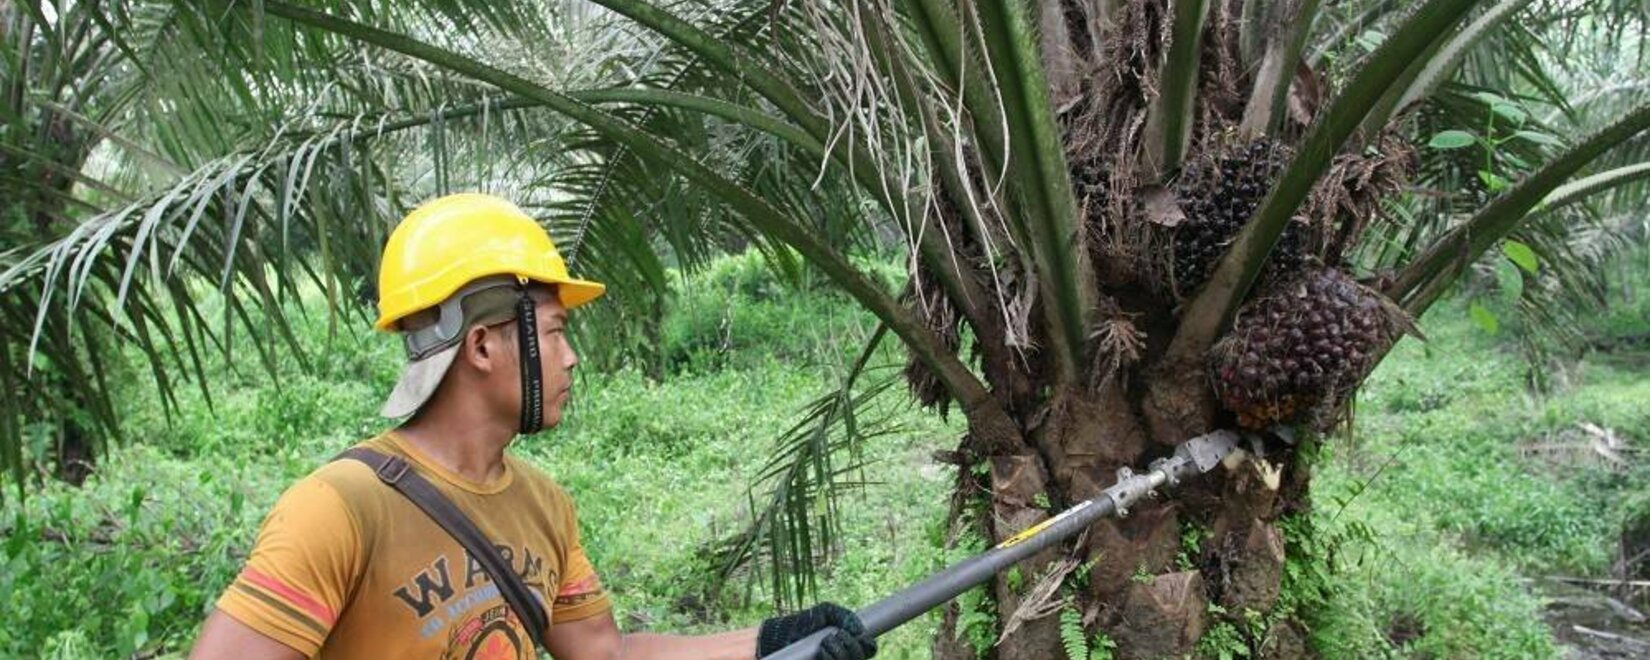 Базовая цена на сырое пальмовое масло в стране с 1 по 15 декабря достигнет удивительной отметки в $795,14 за тонну